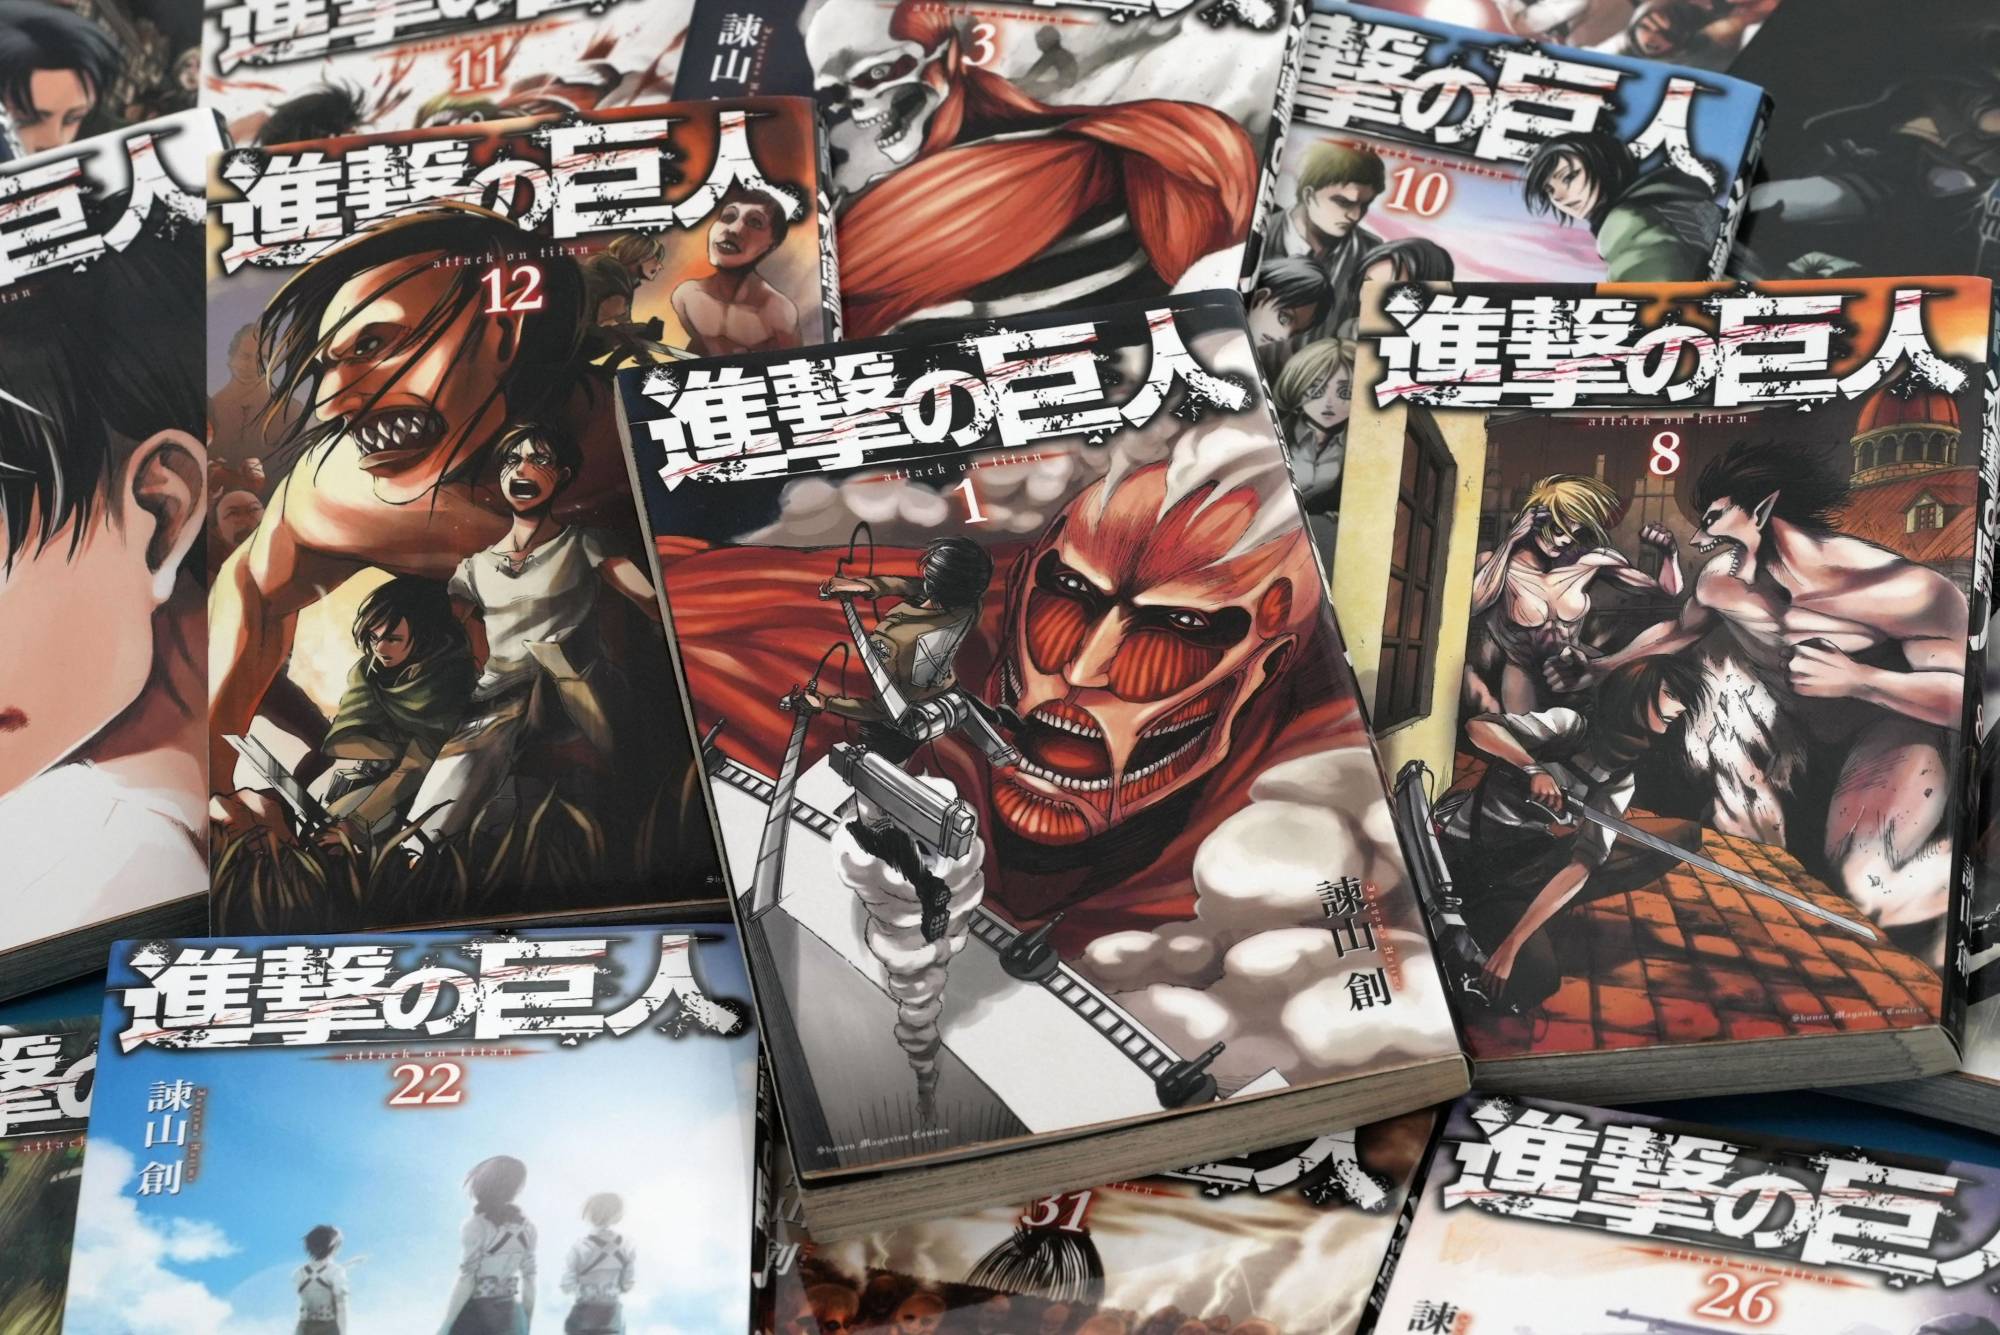 Attack On Titan Shingeki no kyojin Anime Huge Hit in Japan